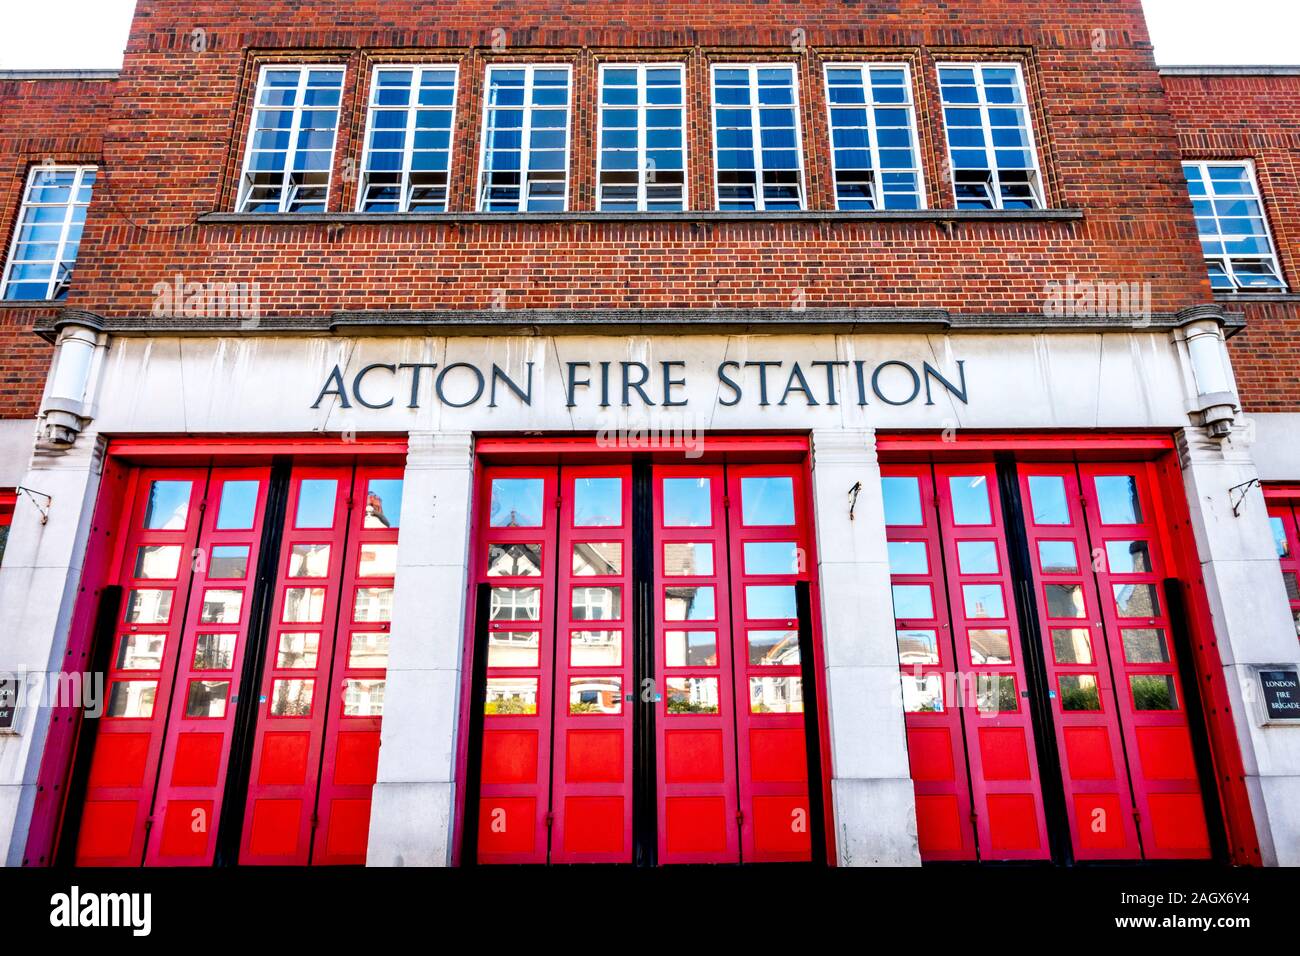 Une partie de l'entrée avant d'Acton Fire Station, avec des portes peintes en rouge. Gunnersbury Lane. Acton, West London, W3, Angleterre, Royaume-Uni. Banque D'Images